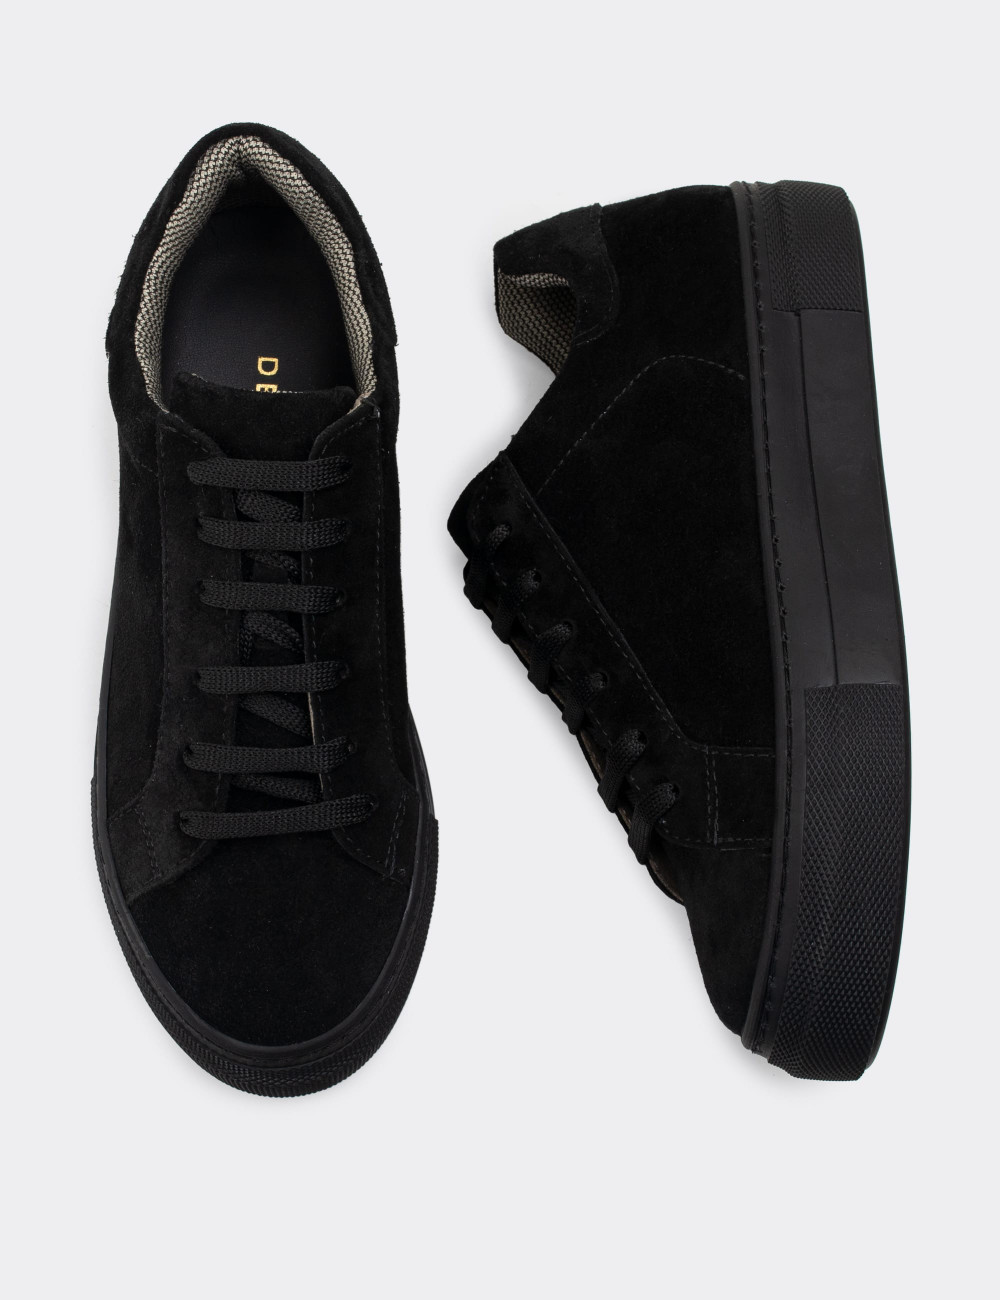 Hakiki Süet Siyah Sneaker Kadın Ayakkabı - Z1681ZSYHC03